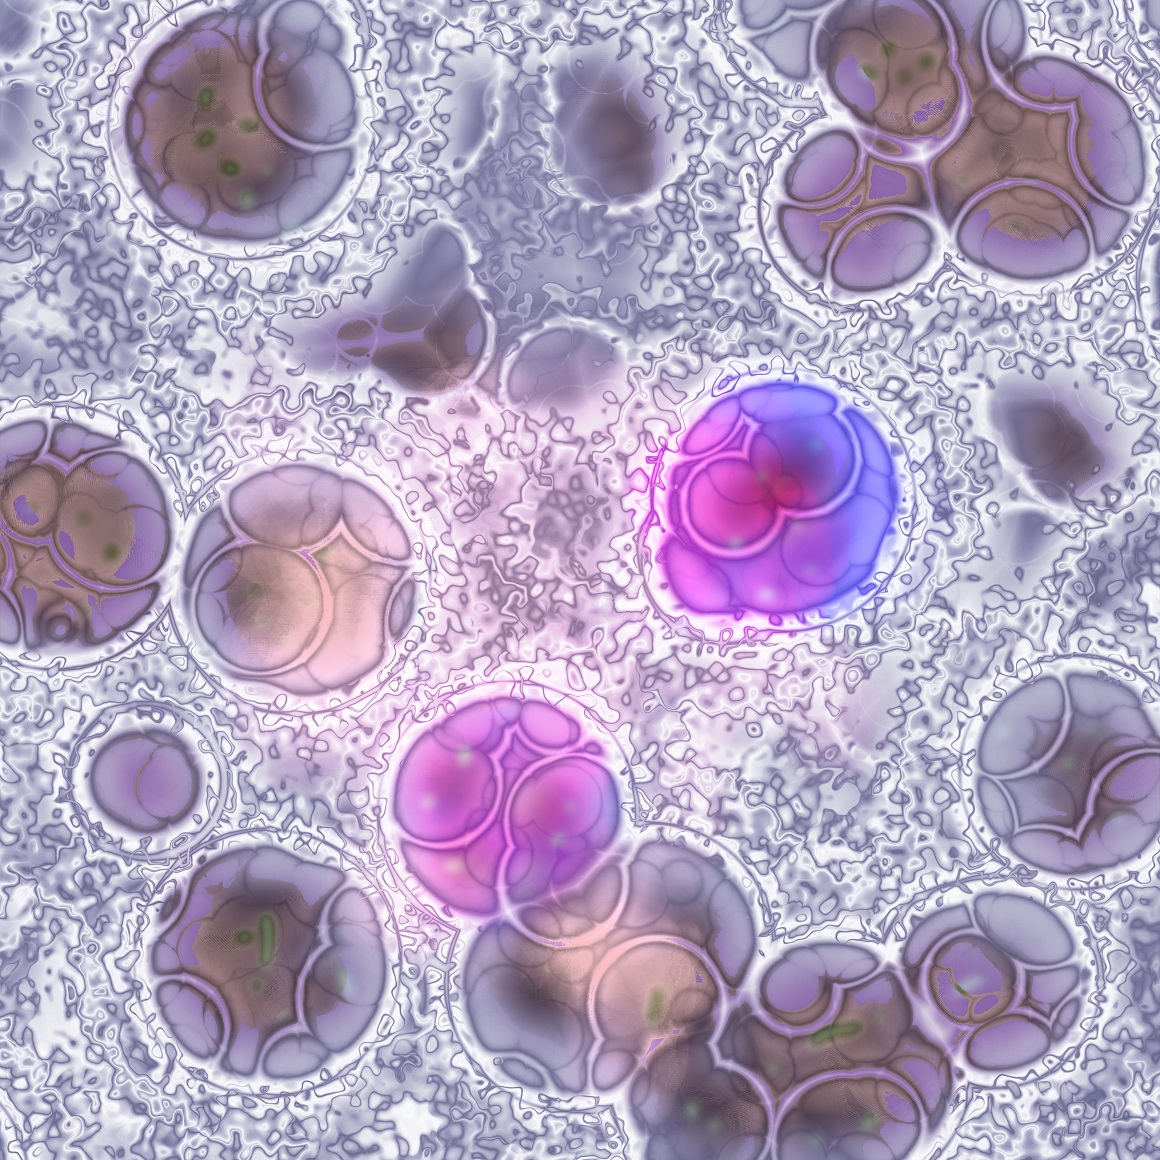 Smatra se da se leukemija javlja kada krvne stanice steknu promjene, mutacije u svojem genetskom materijalu ili DNK-u